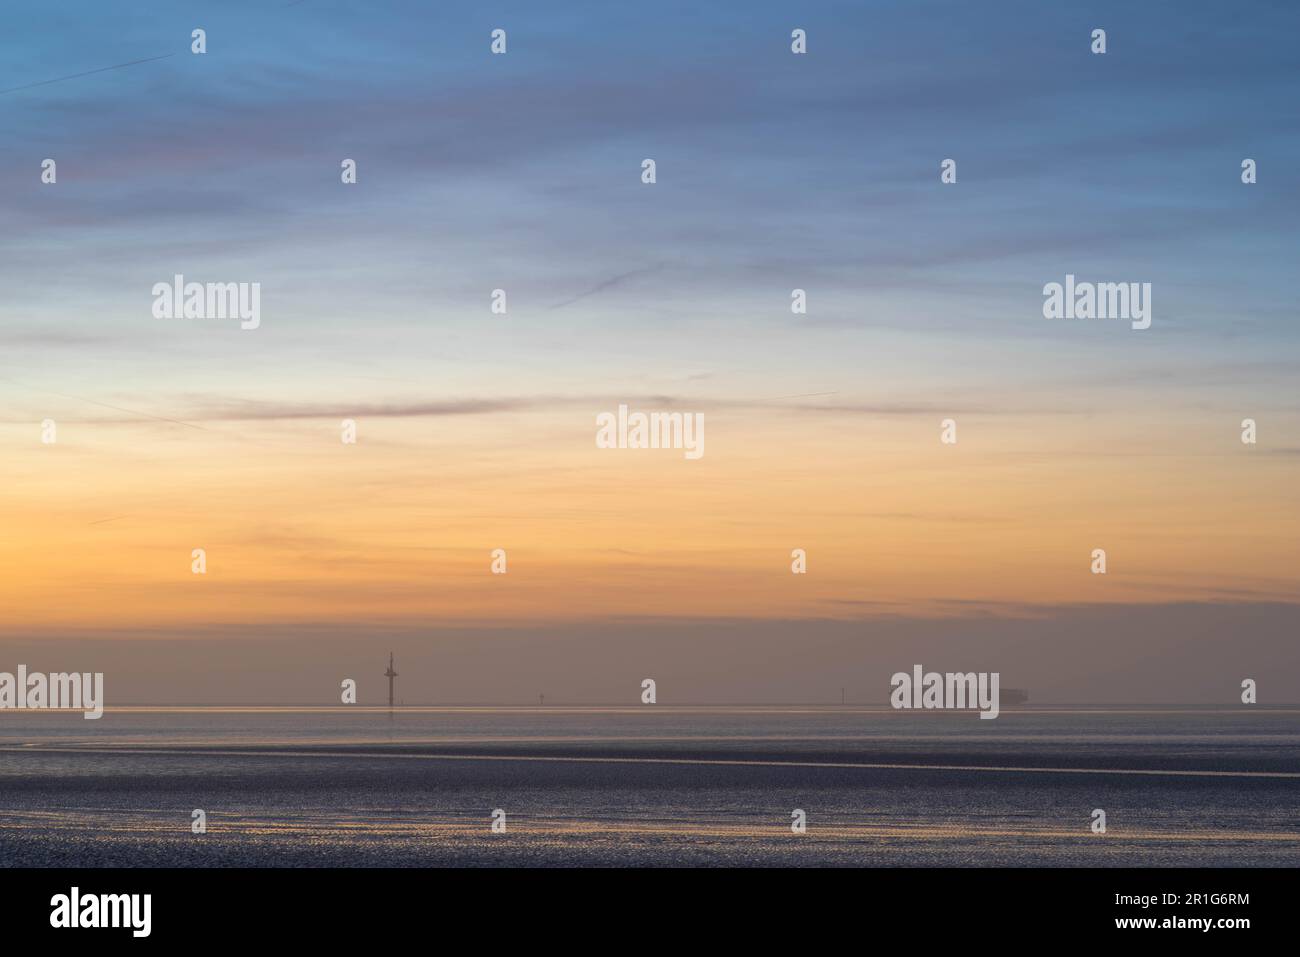 Abendatmosphäre auf der Weser nahe Bremerhaven bei Ebbe, Nordsee, Schiff ankommt, Cuxhaven, Deutschland Stockfoto